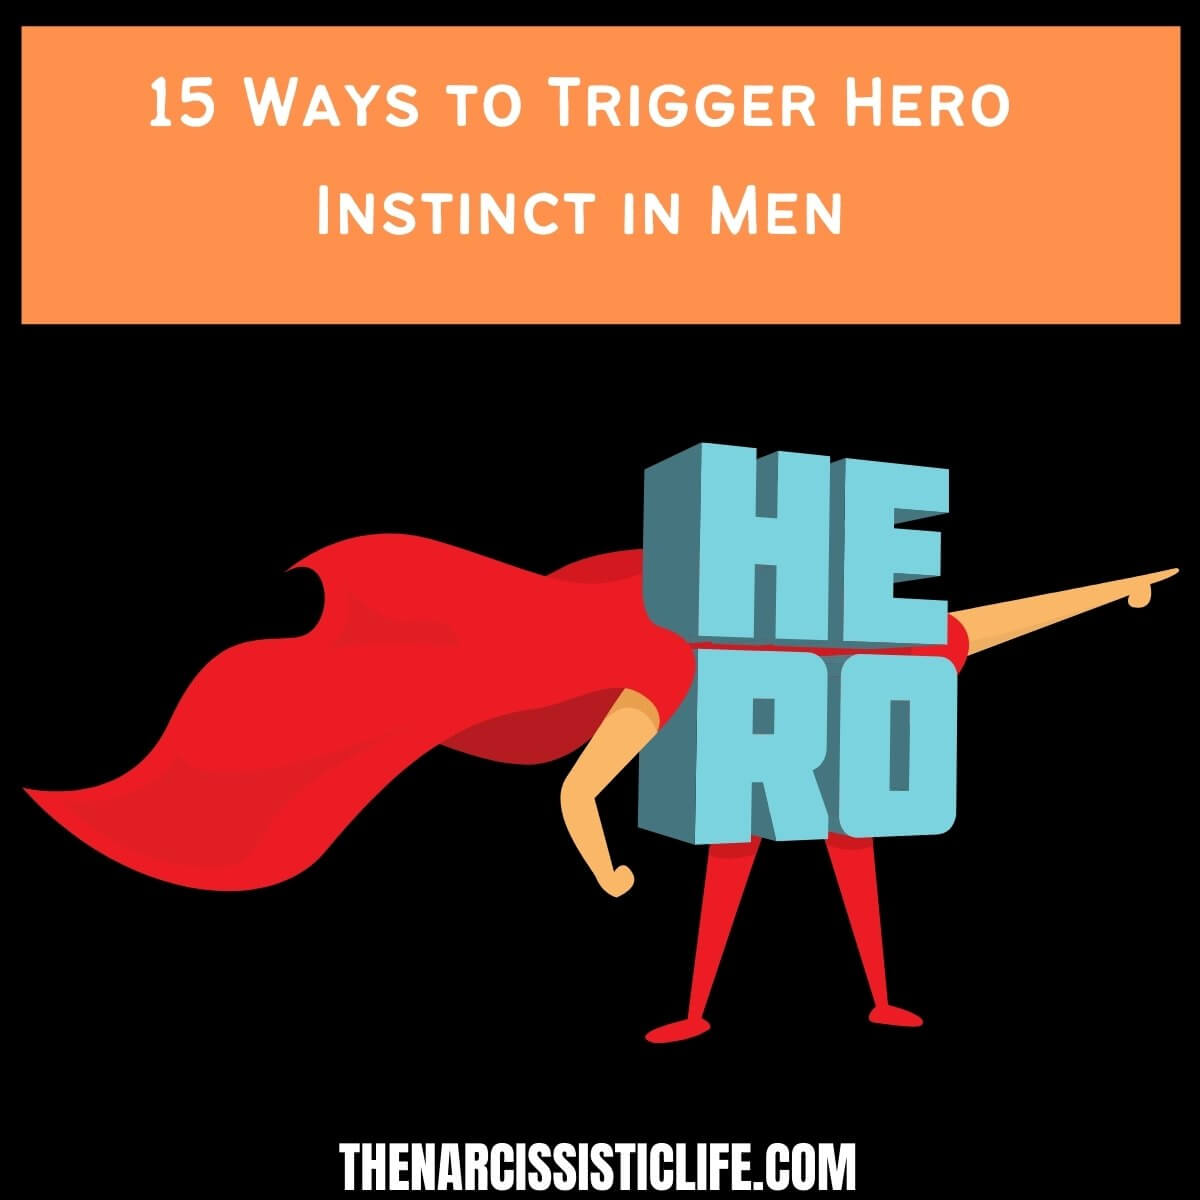 Kaip sužadinti žmogaus herojaus instinktą? (Išsamus vadovas)